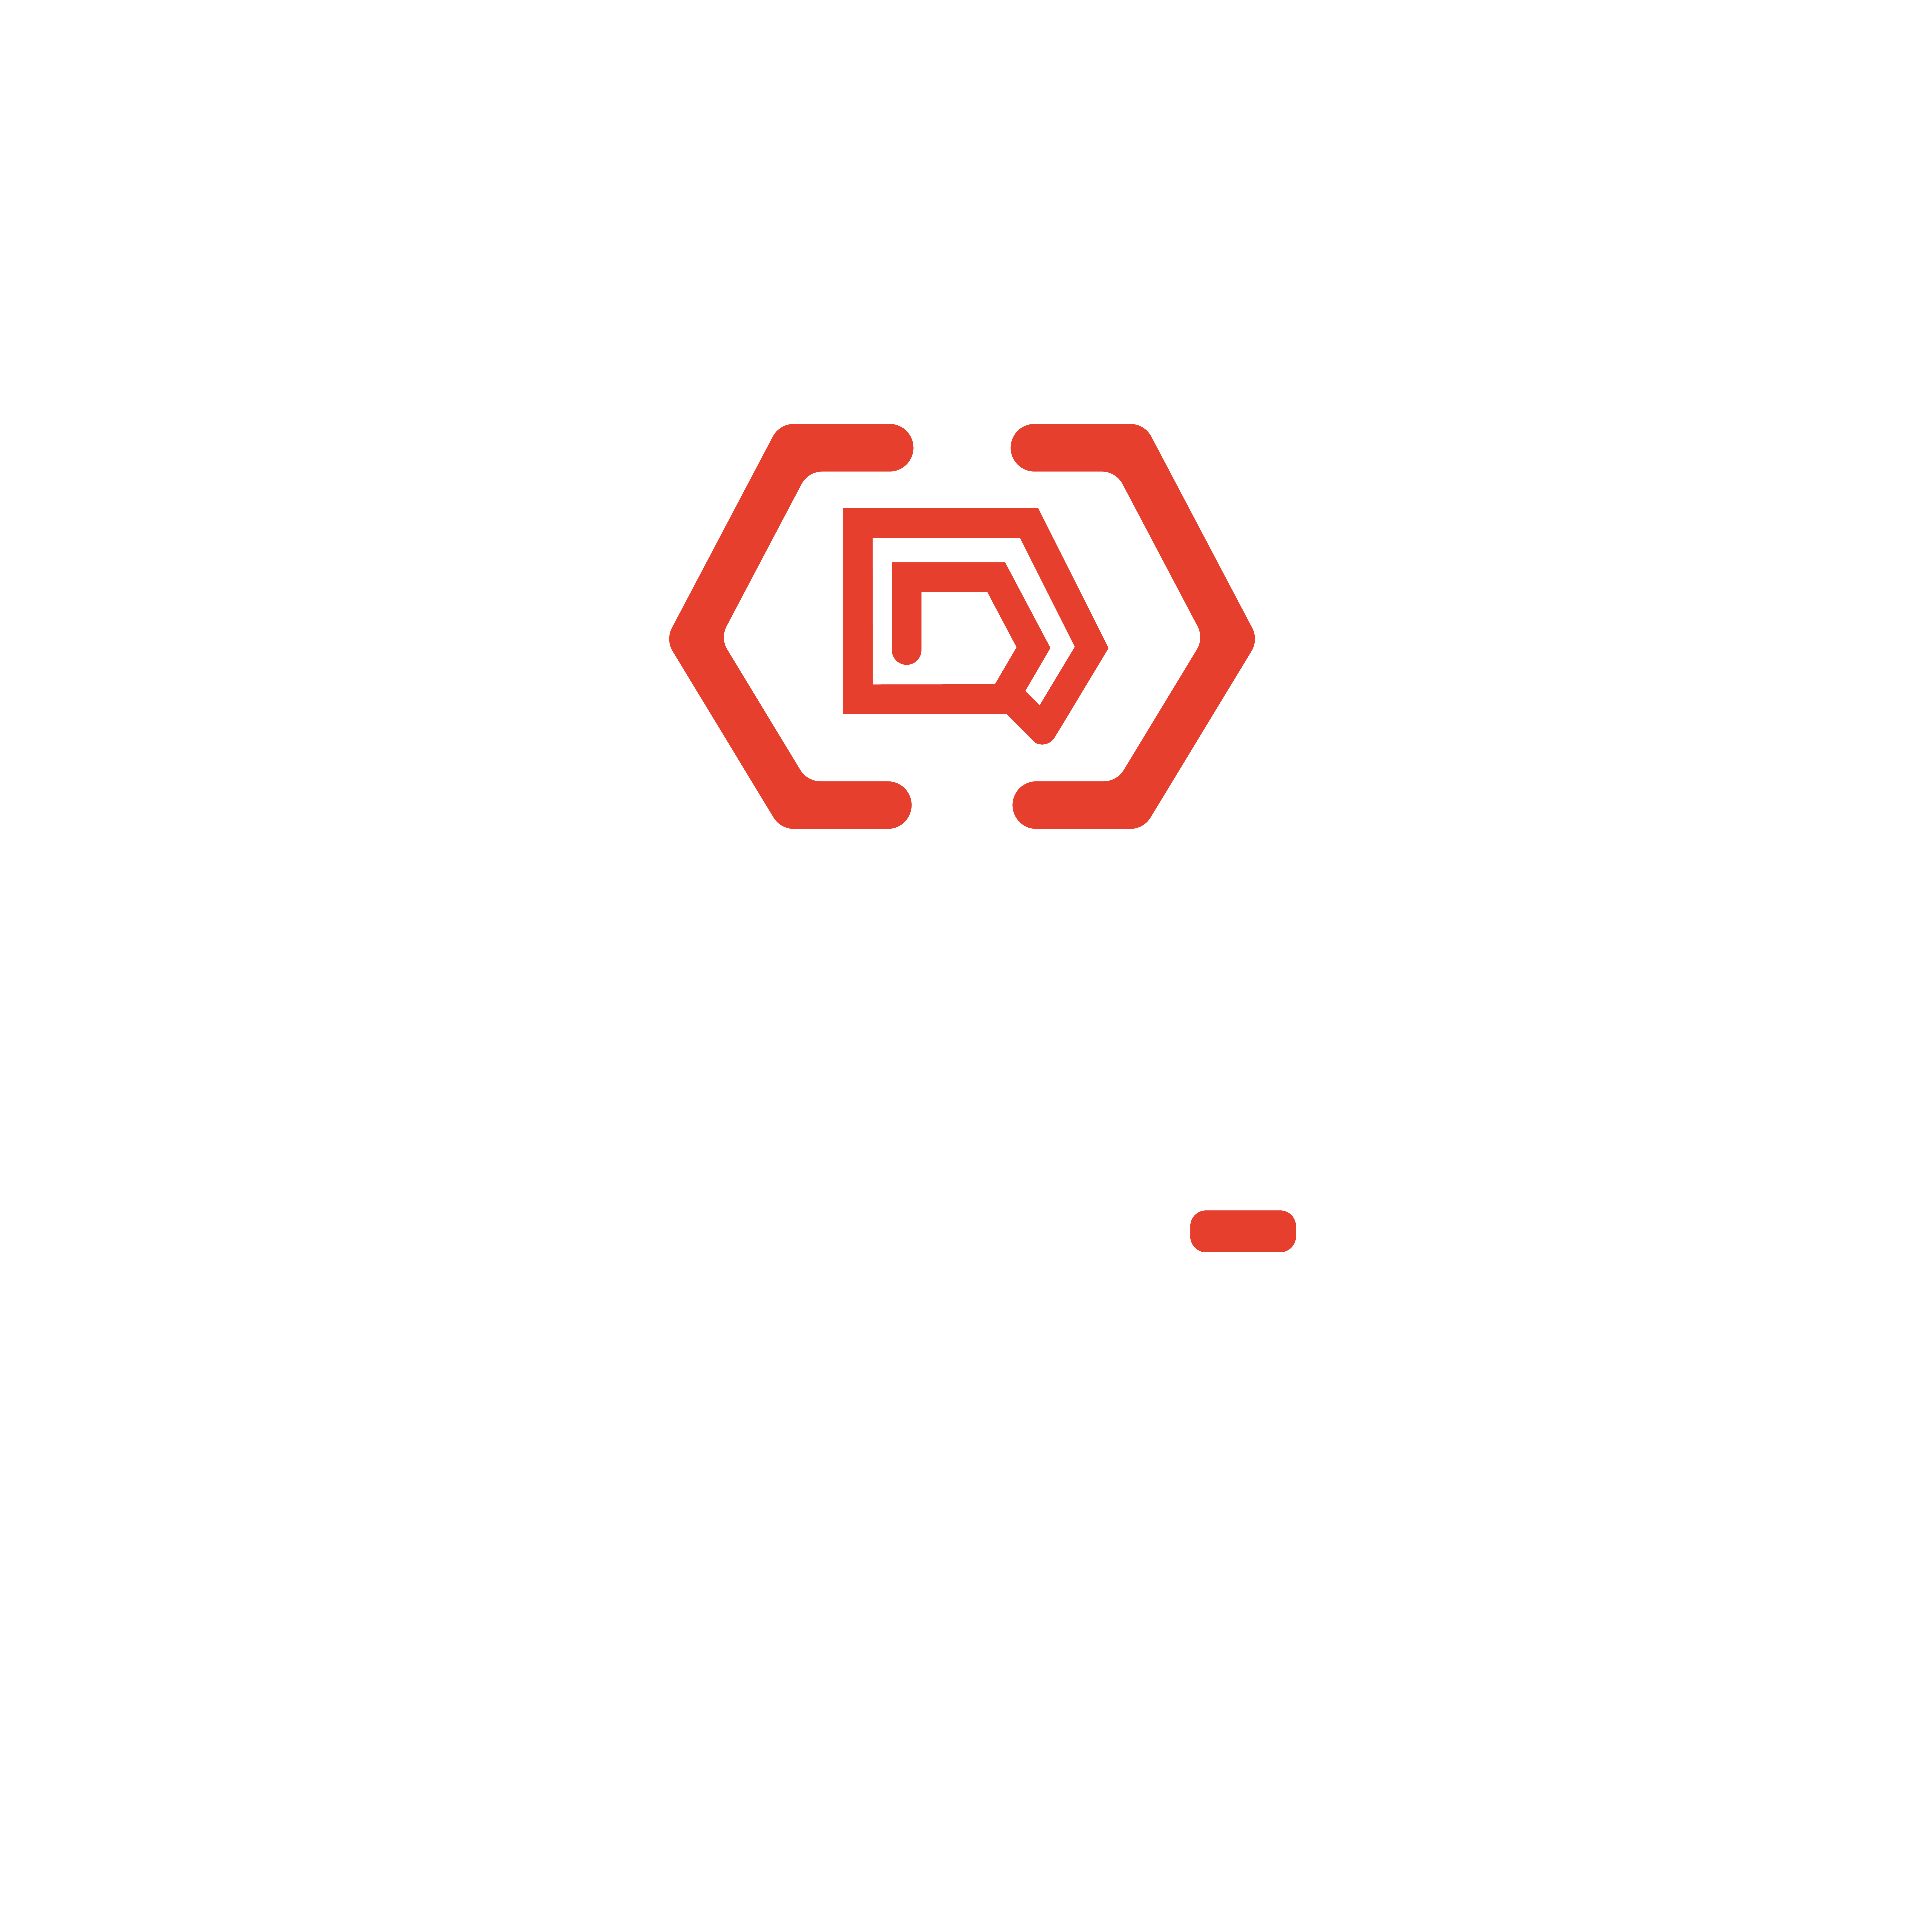 Douglas Romão